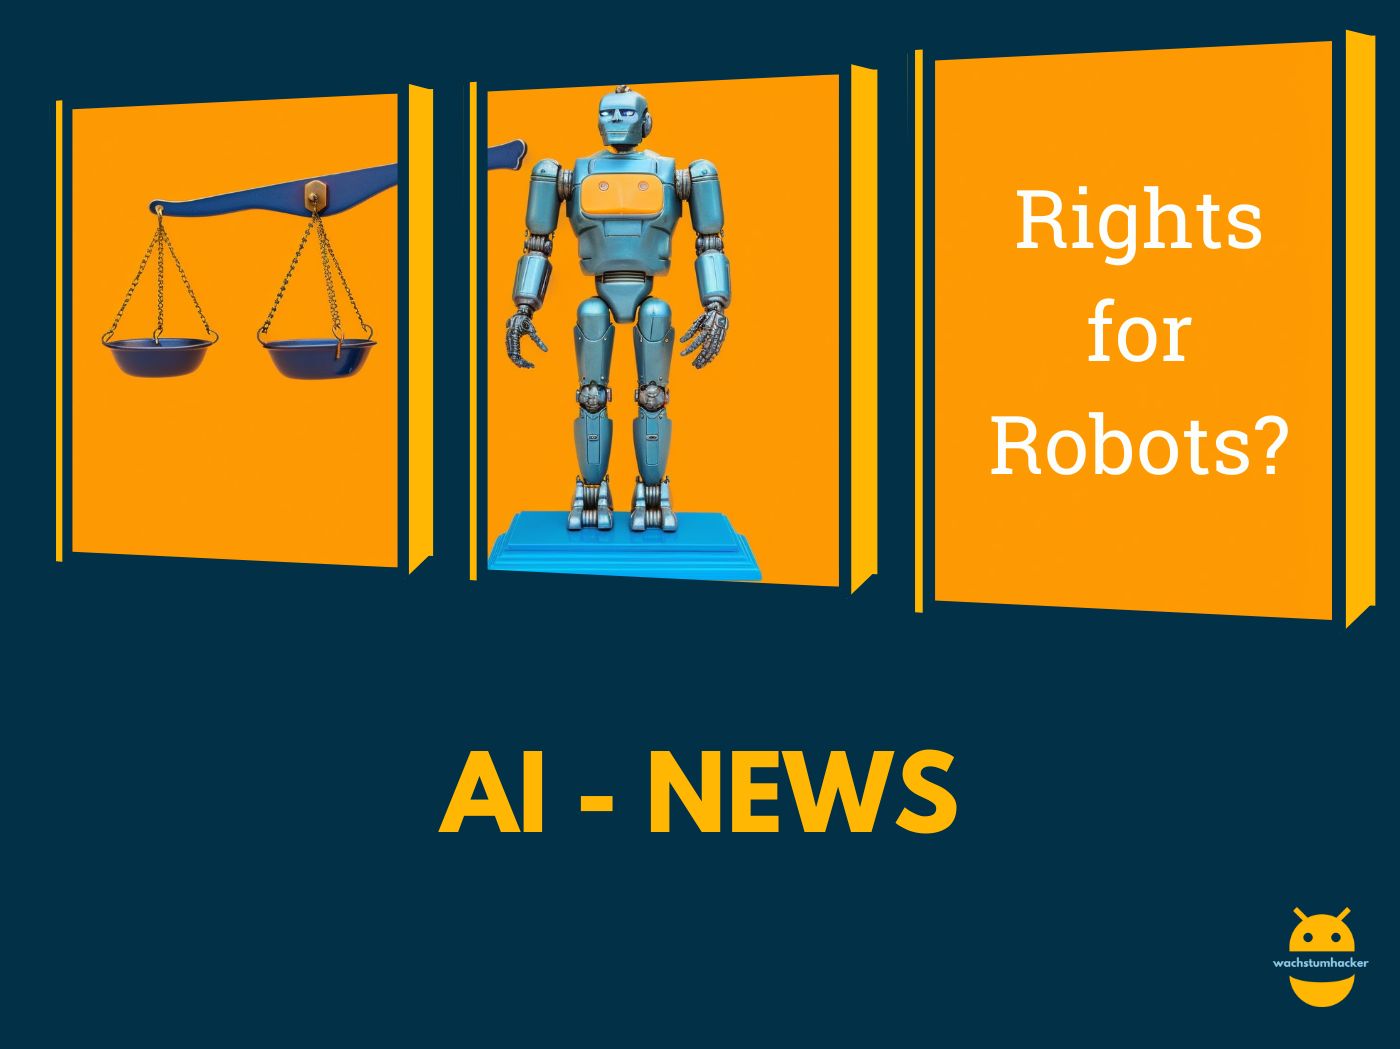 Sollten Roboter Rechte bekommen?